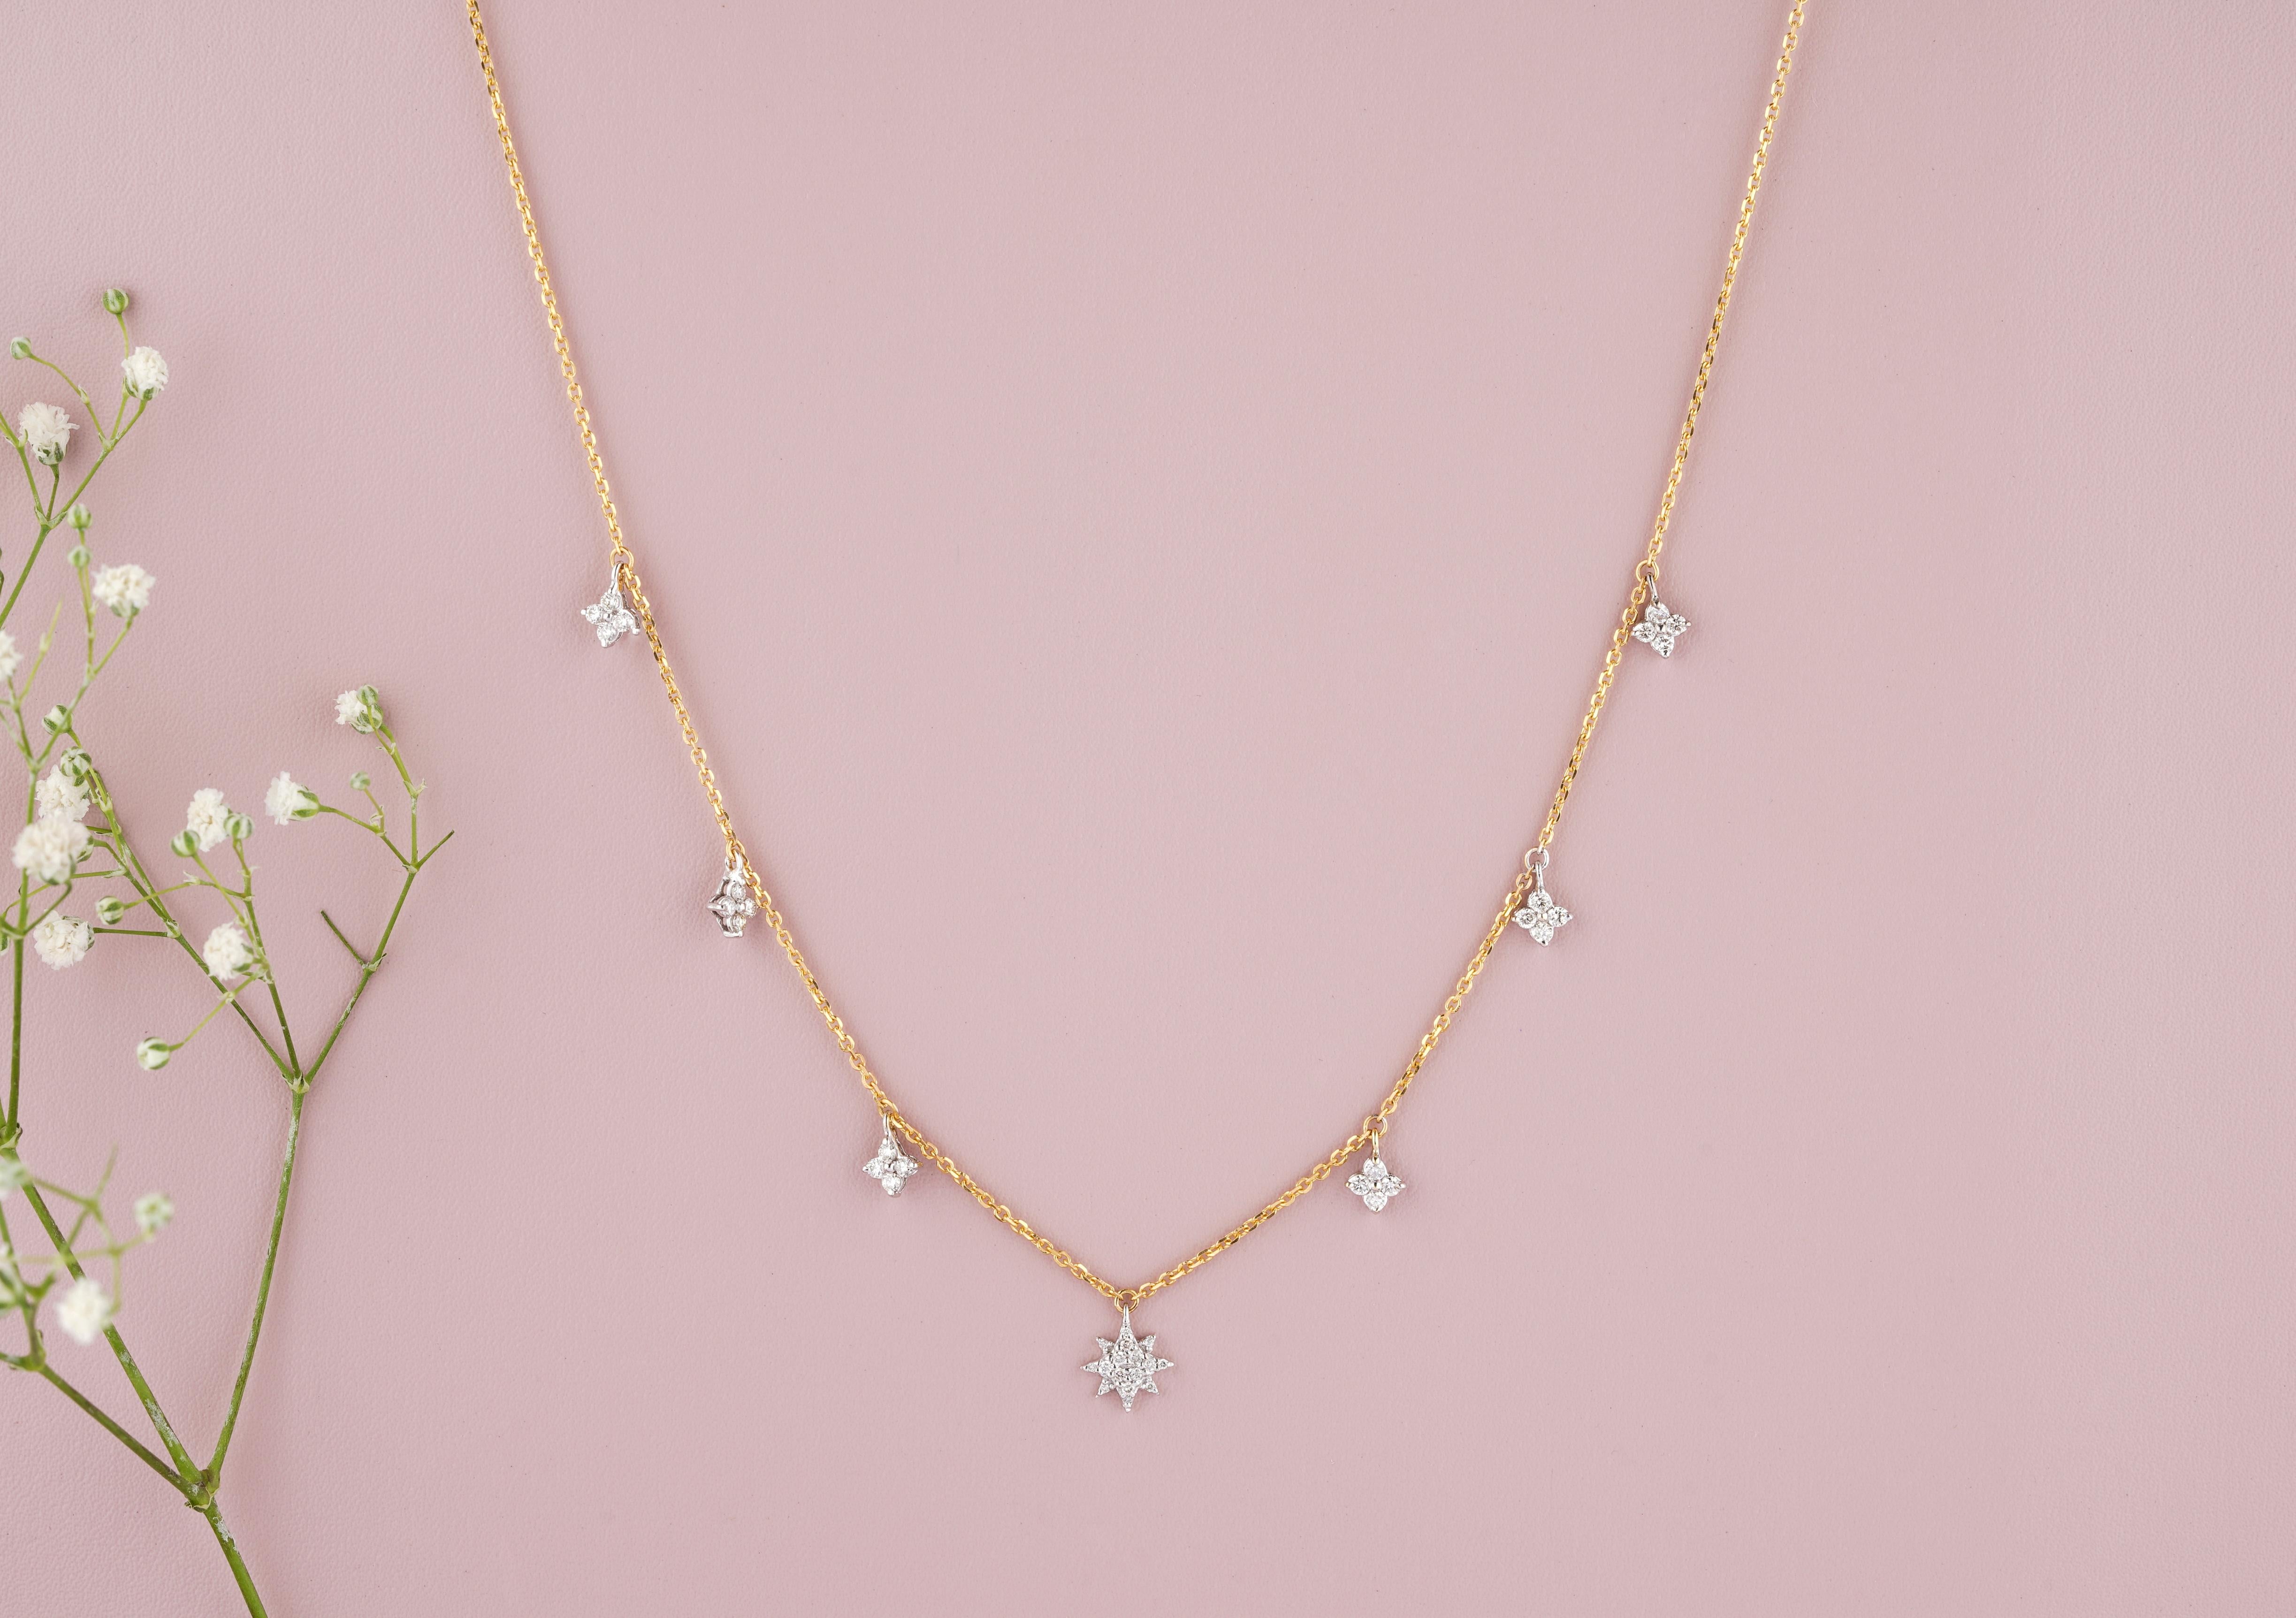 Diese Halskette aus massivem 18-karätigem Gold mit baumelnden Diamantsternen ist ein elegantes und stilvolles Schmuckstück. Diese Halskette aus massivem 18-karätigem Gold verfügt über zarte sternförmige Charms, die mit schimmernden Diamanten besetzt